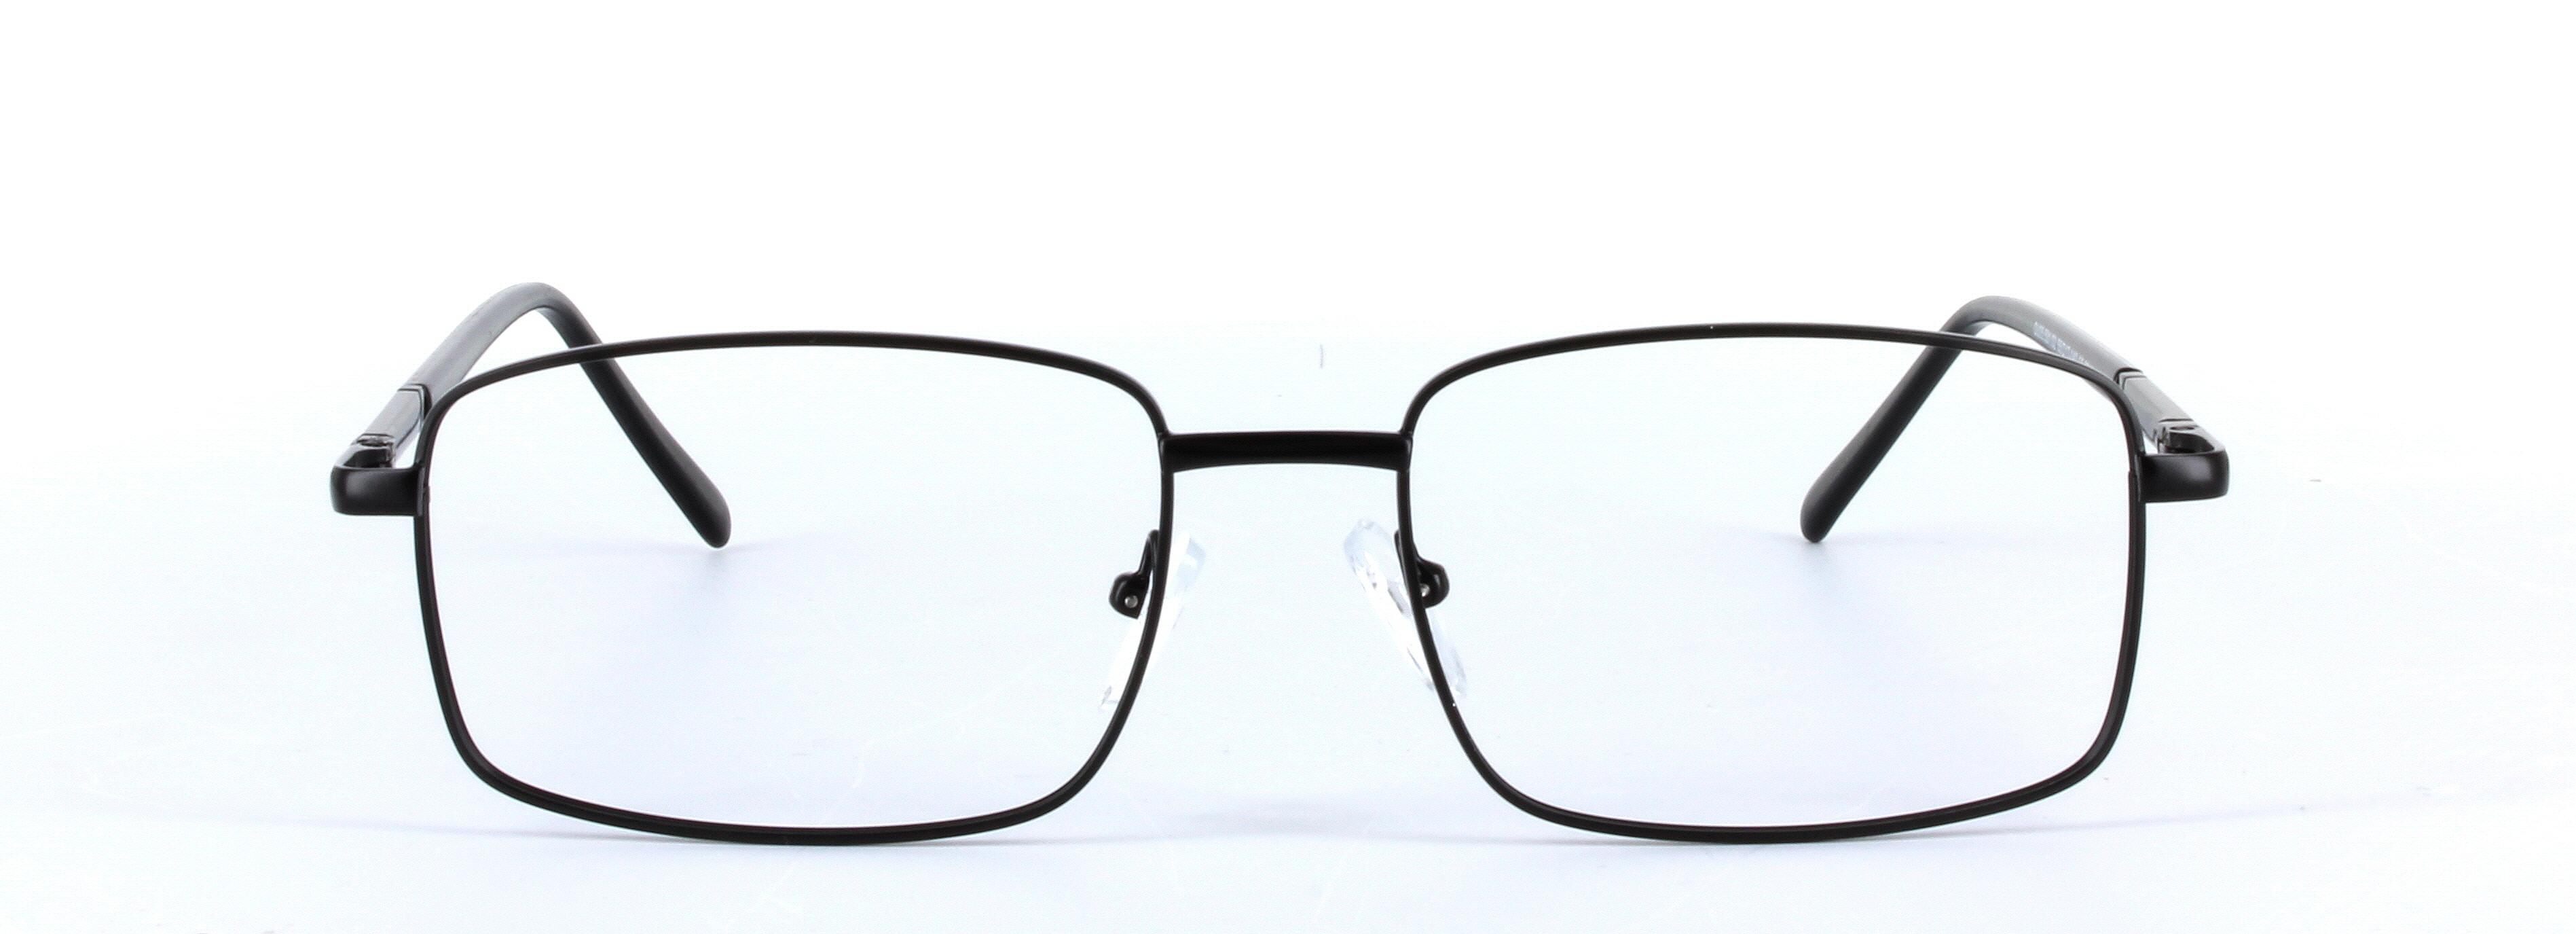 Jasper Black Full Rim Rectangular Metal Glasses - Image View 5